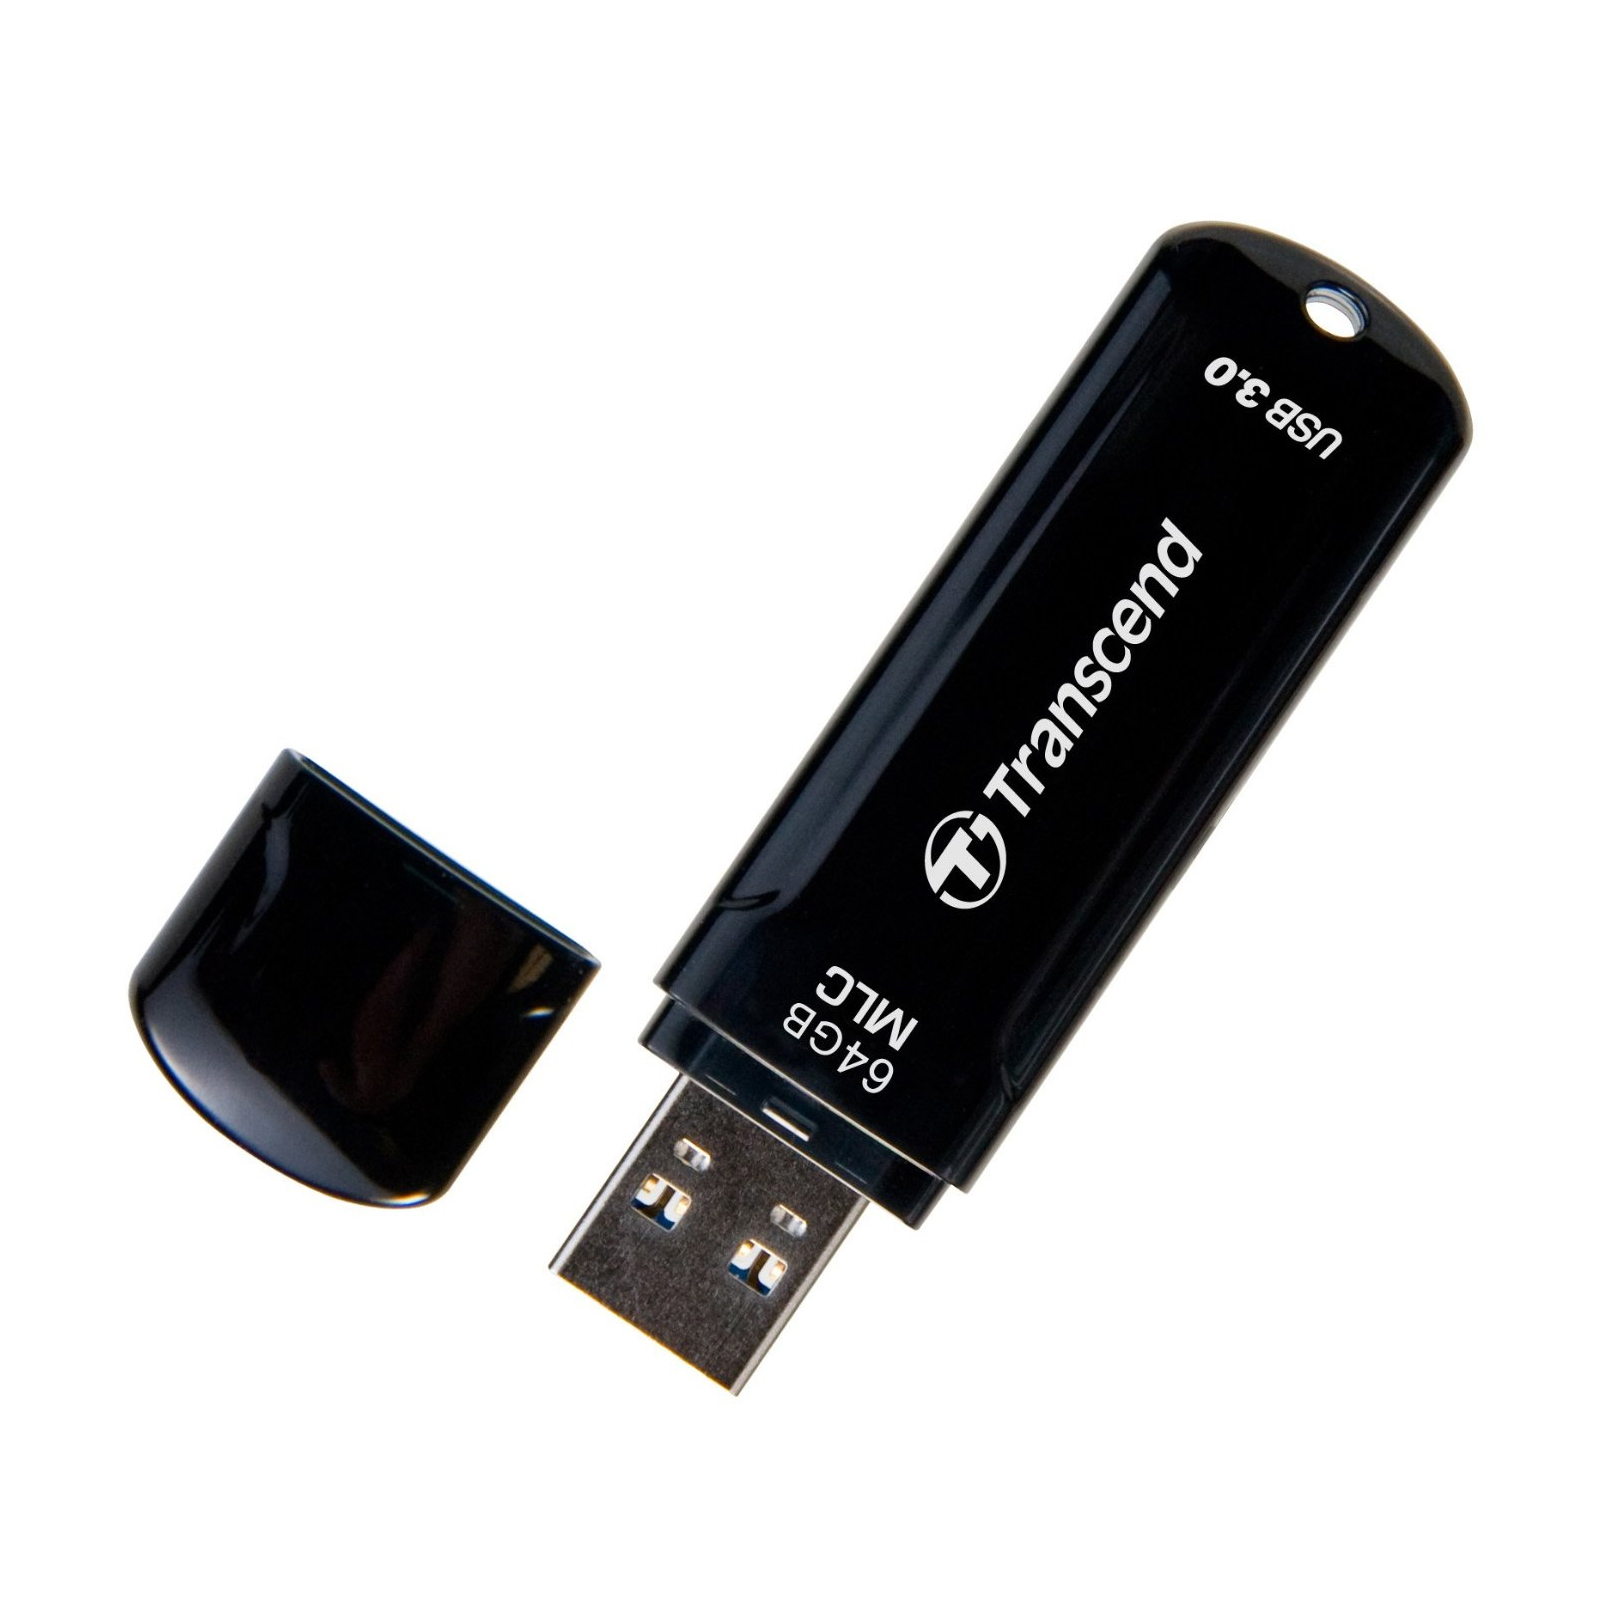 USB флеш накопитель Transcend 64GB JetFlash 750 USB 3.0 (TS64GJF750K) изображение 4